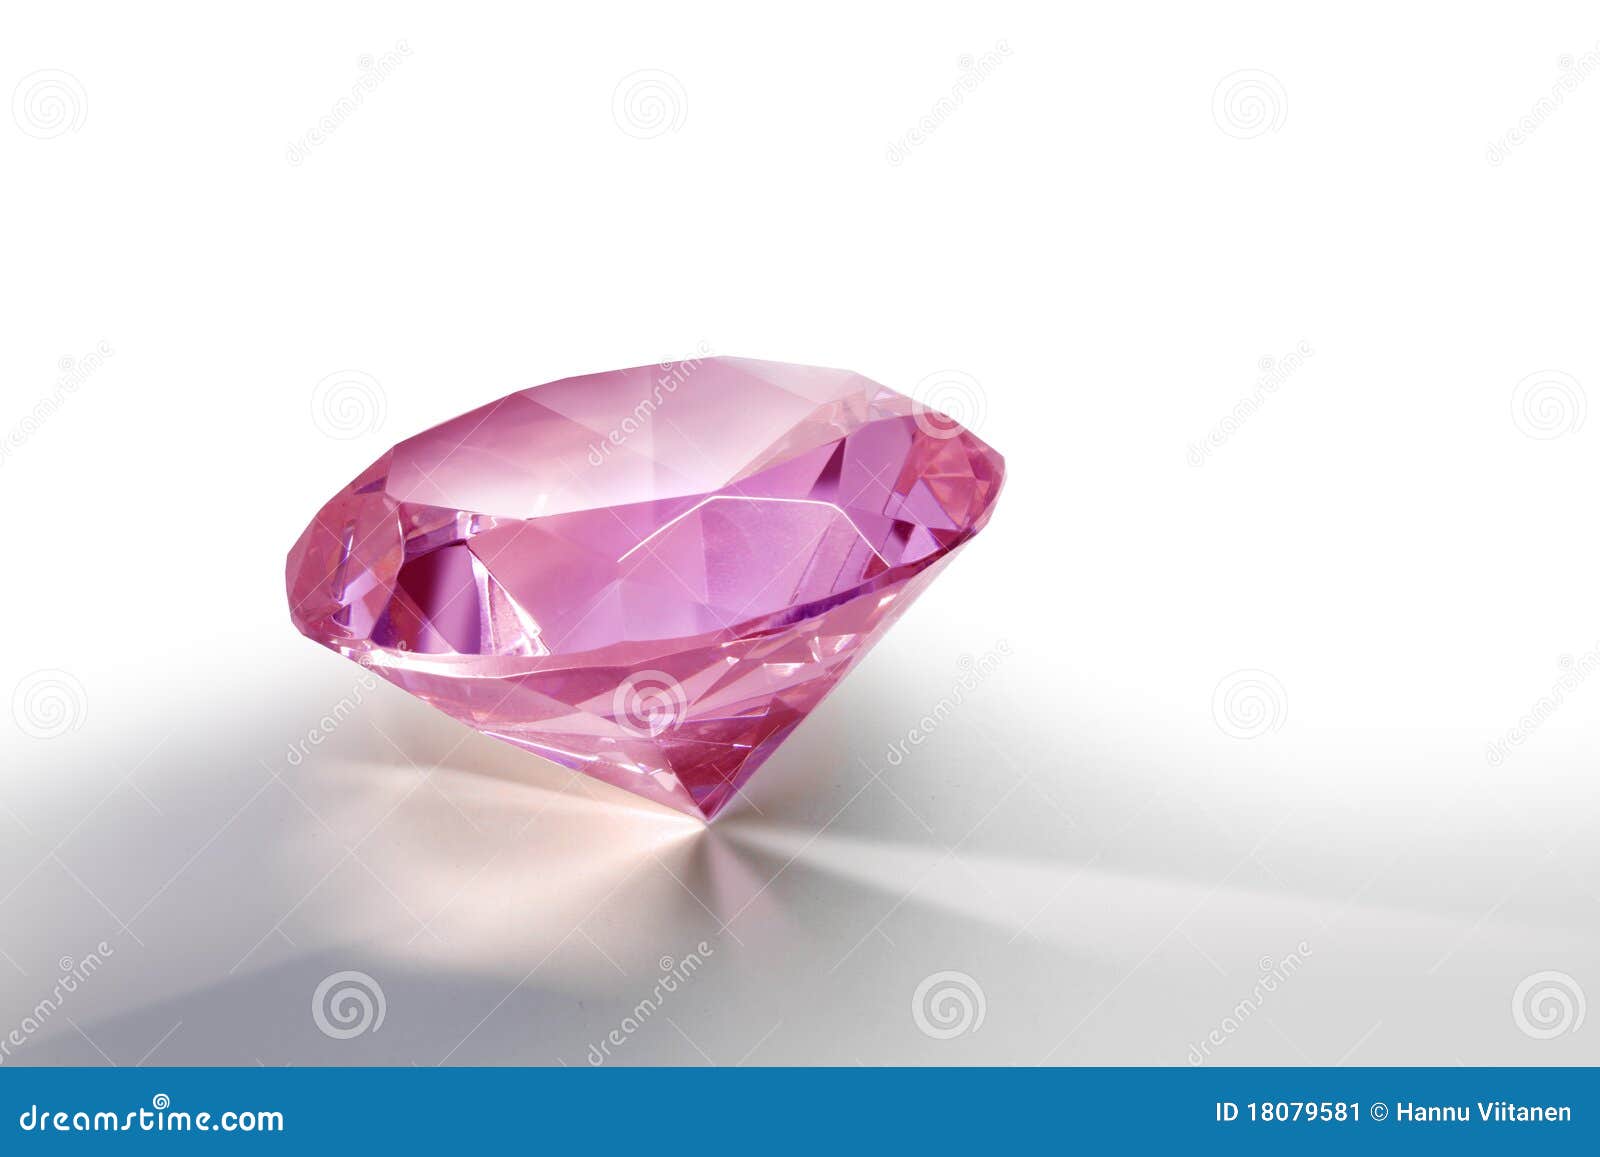 pink-diamond-18079581.jpg